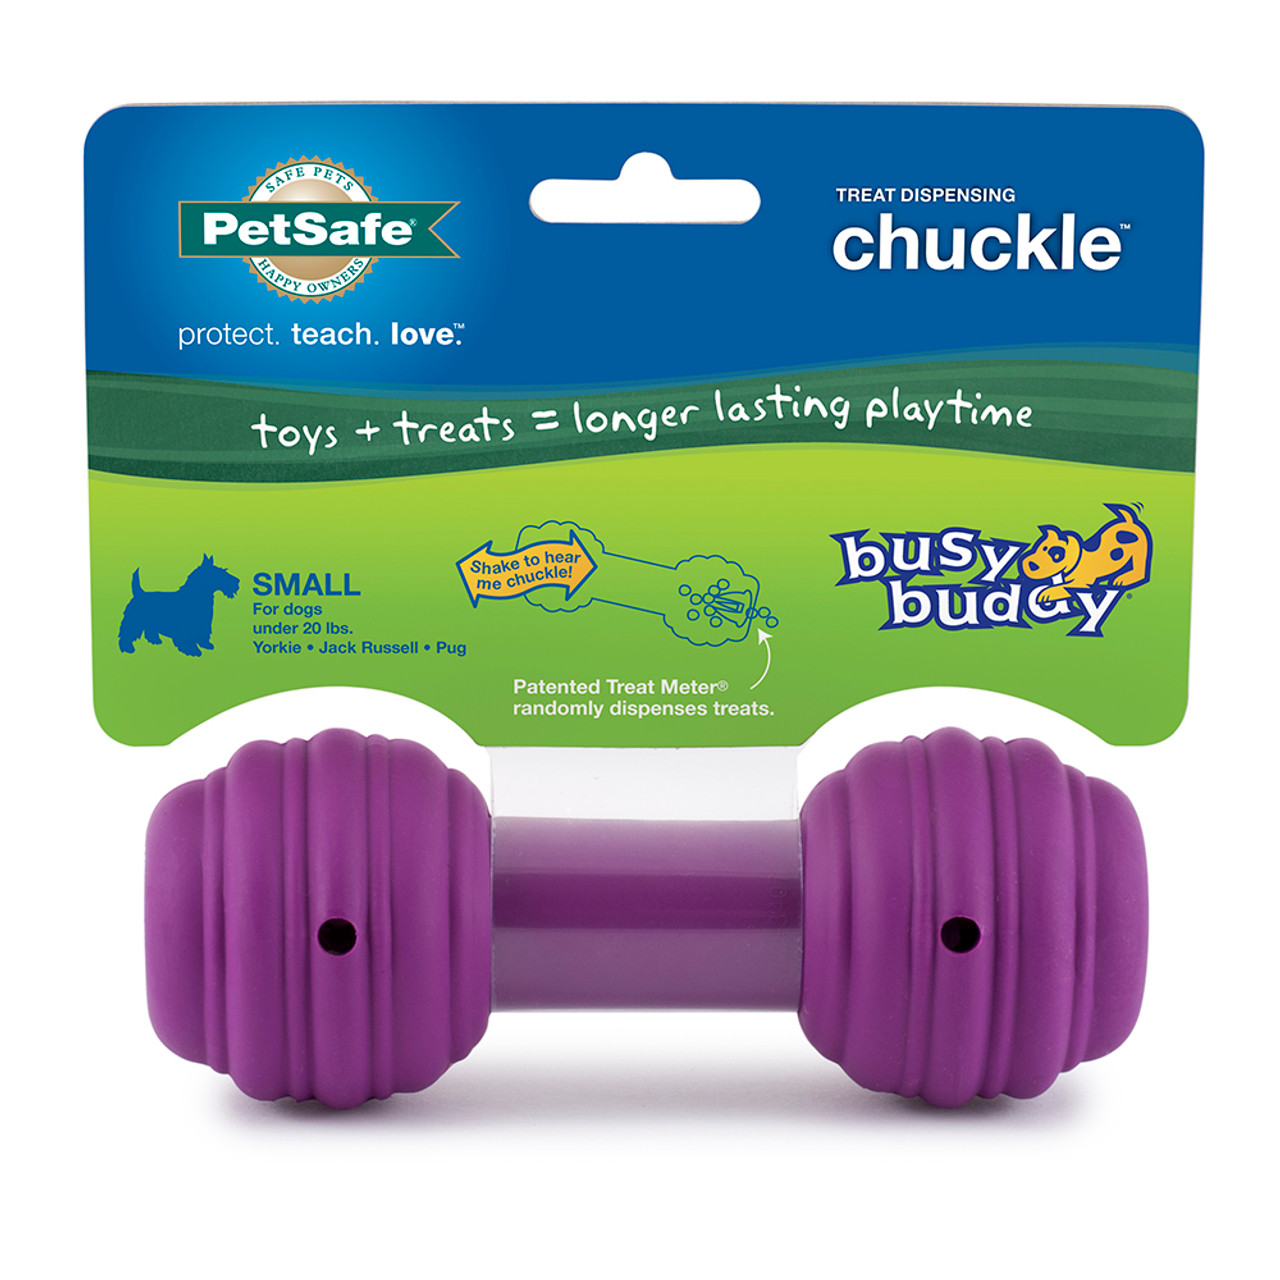 Busy Buddy Chuckle Dog Toy